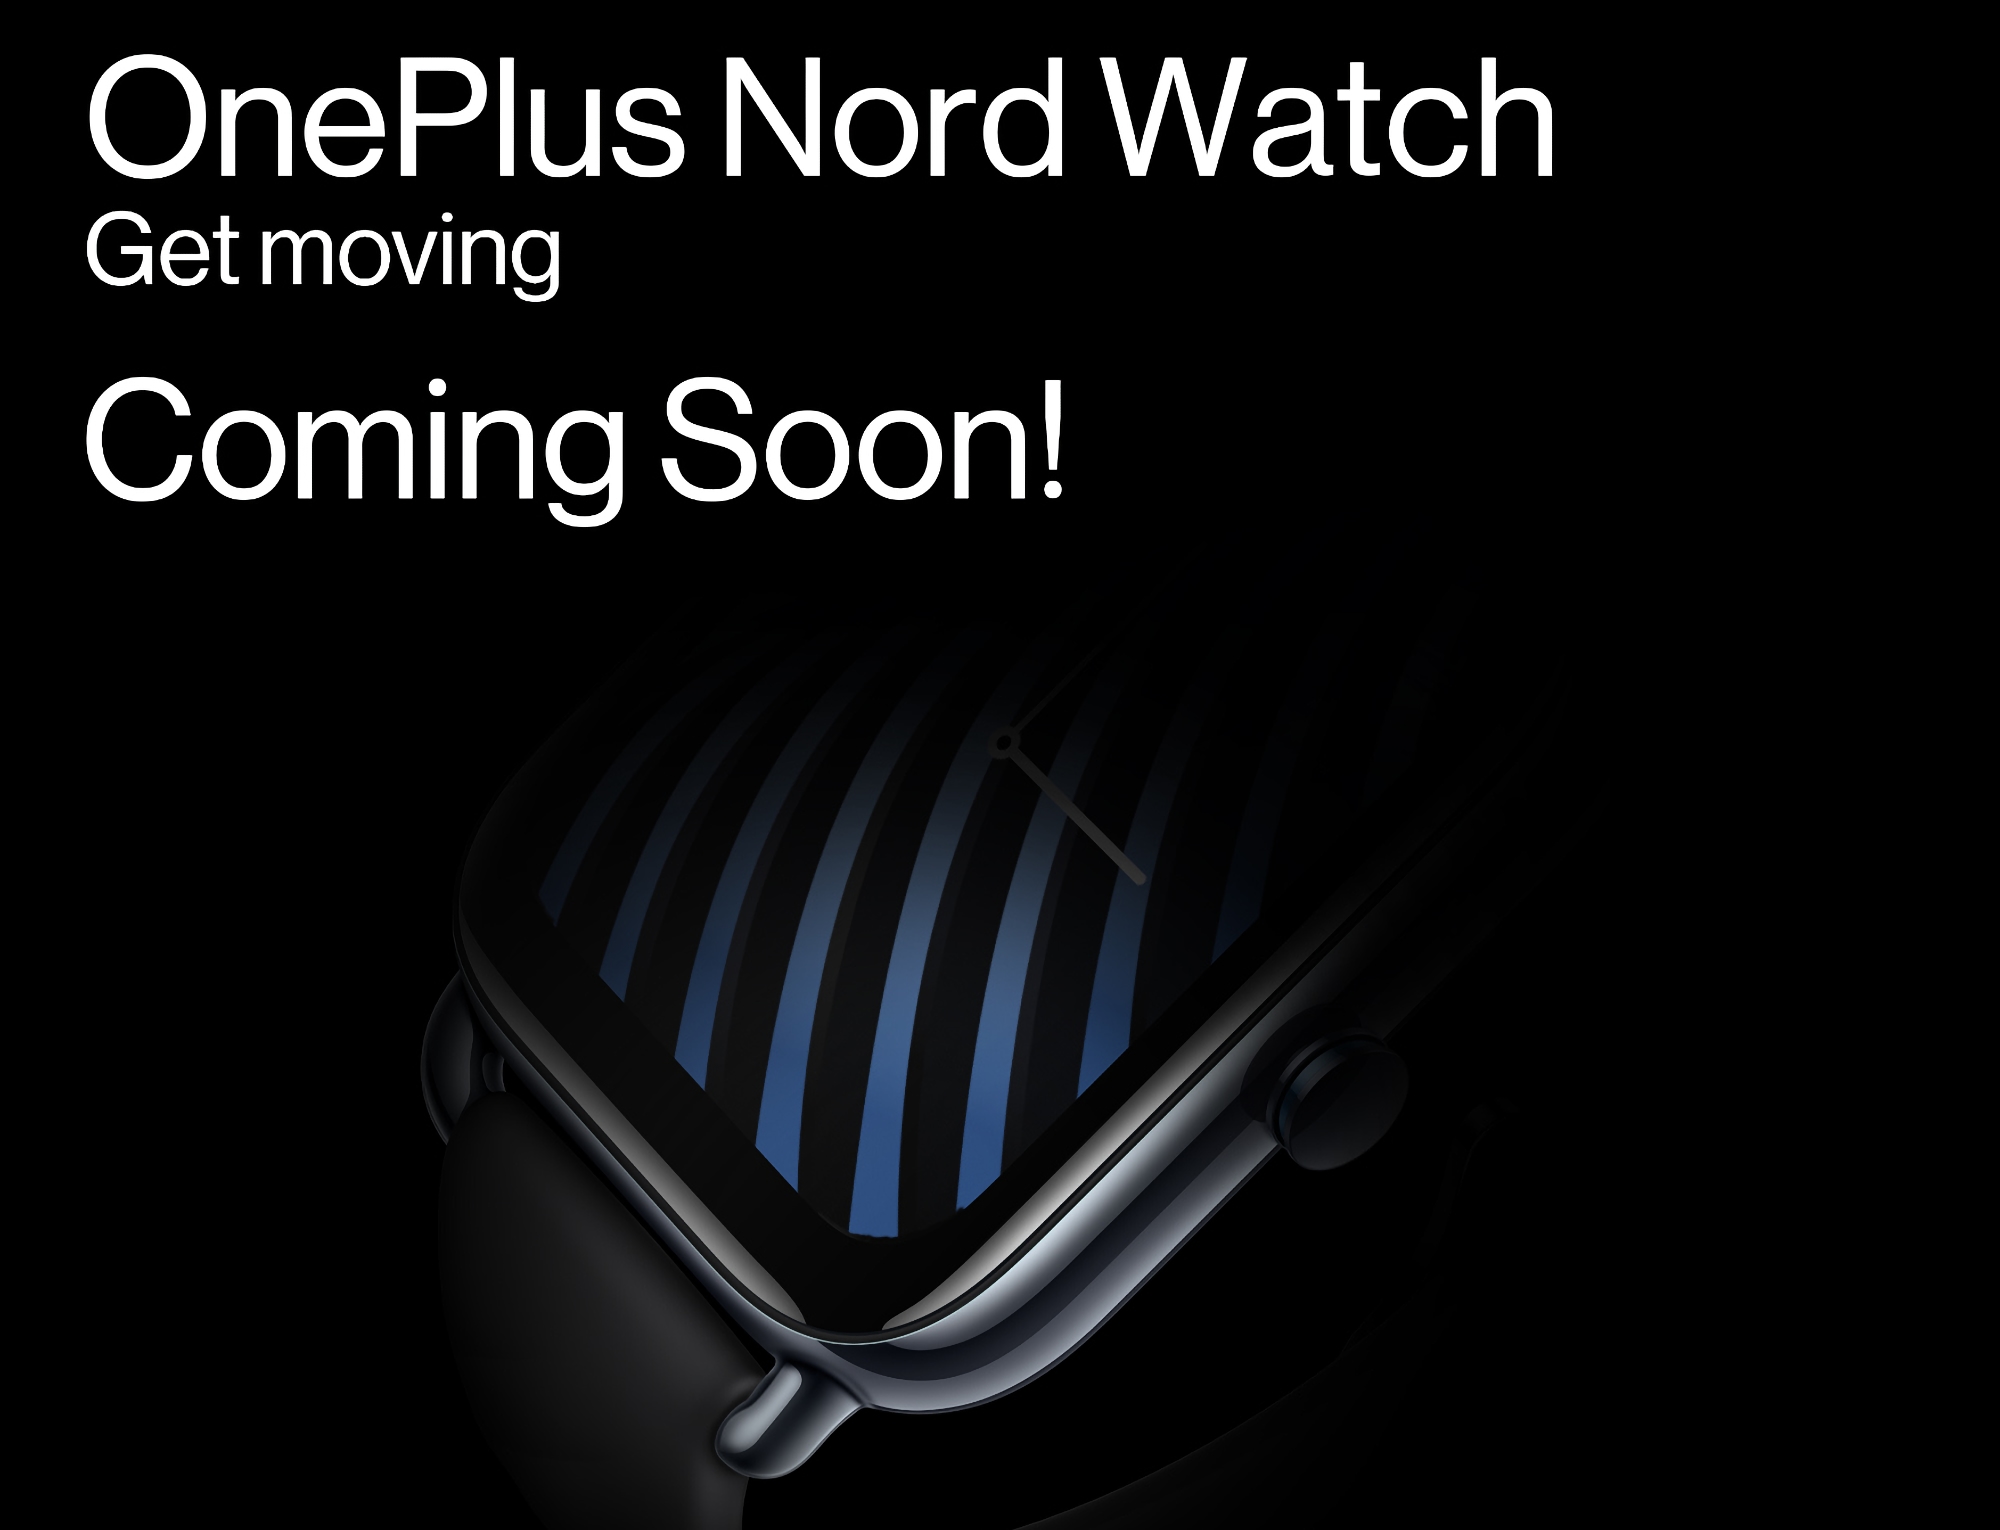 Ankündigung nah: OnePlus hat mit der Ankündigung der Nord Watch Smartwatch begonnen